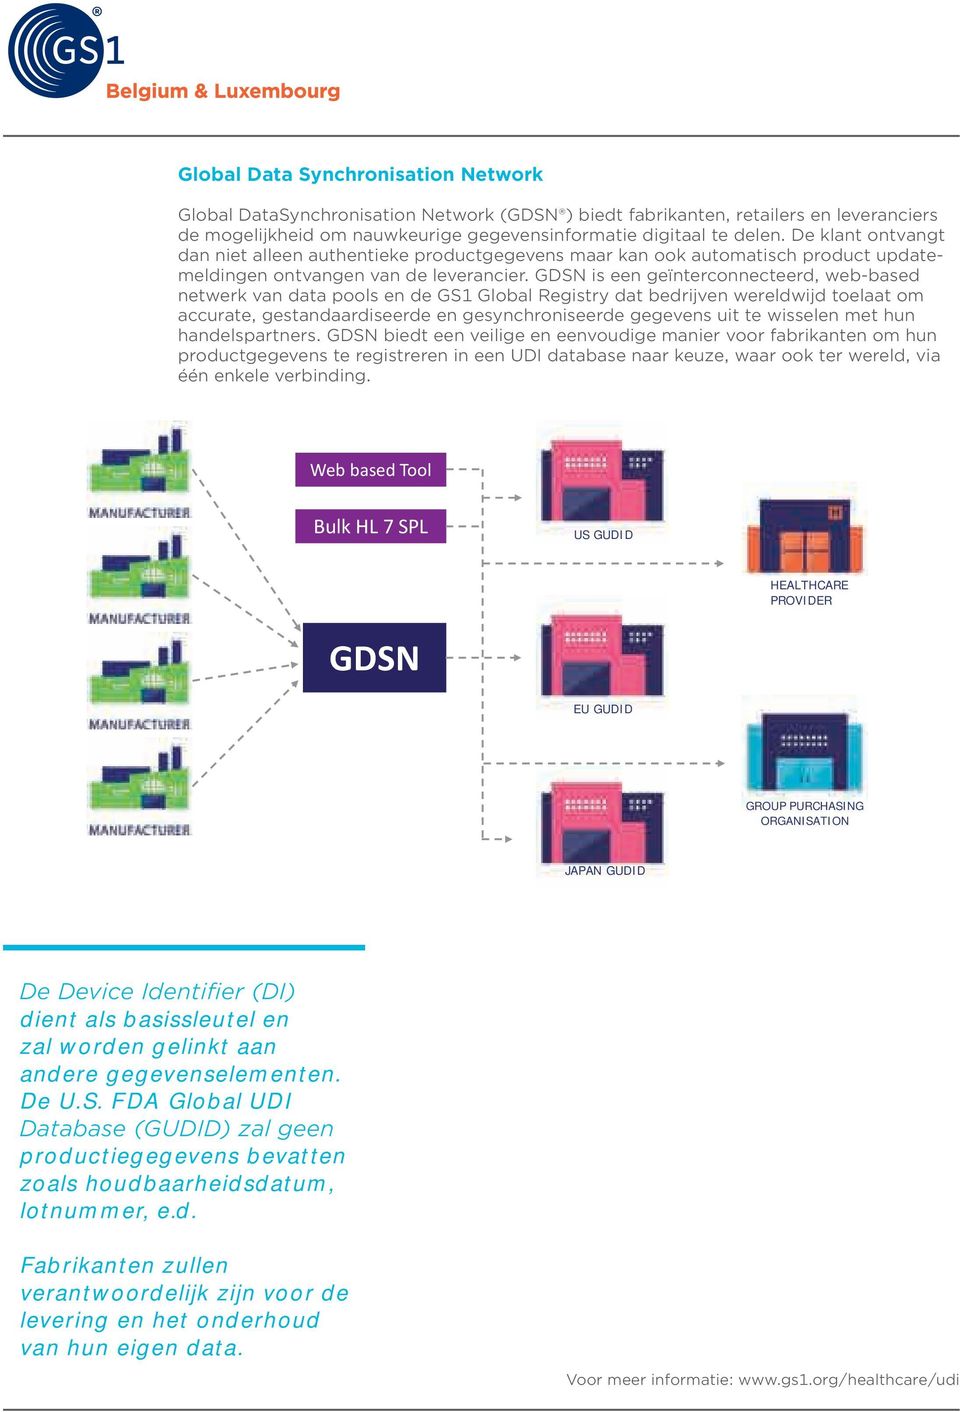 GDSN is een geïnterconnecteerd, web-based netwerk van data pools en de GS1 Global Registry dat bedrijven wereldwijd toelaat om accurate, gestandaardiseerde en gesynchroniseerde gegevens uit te